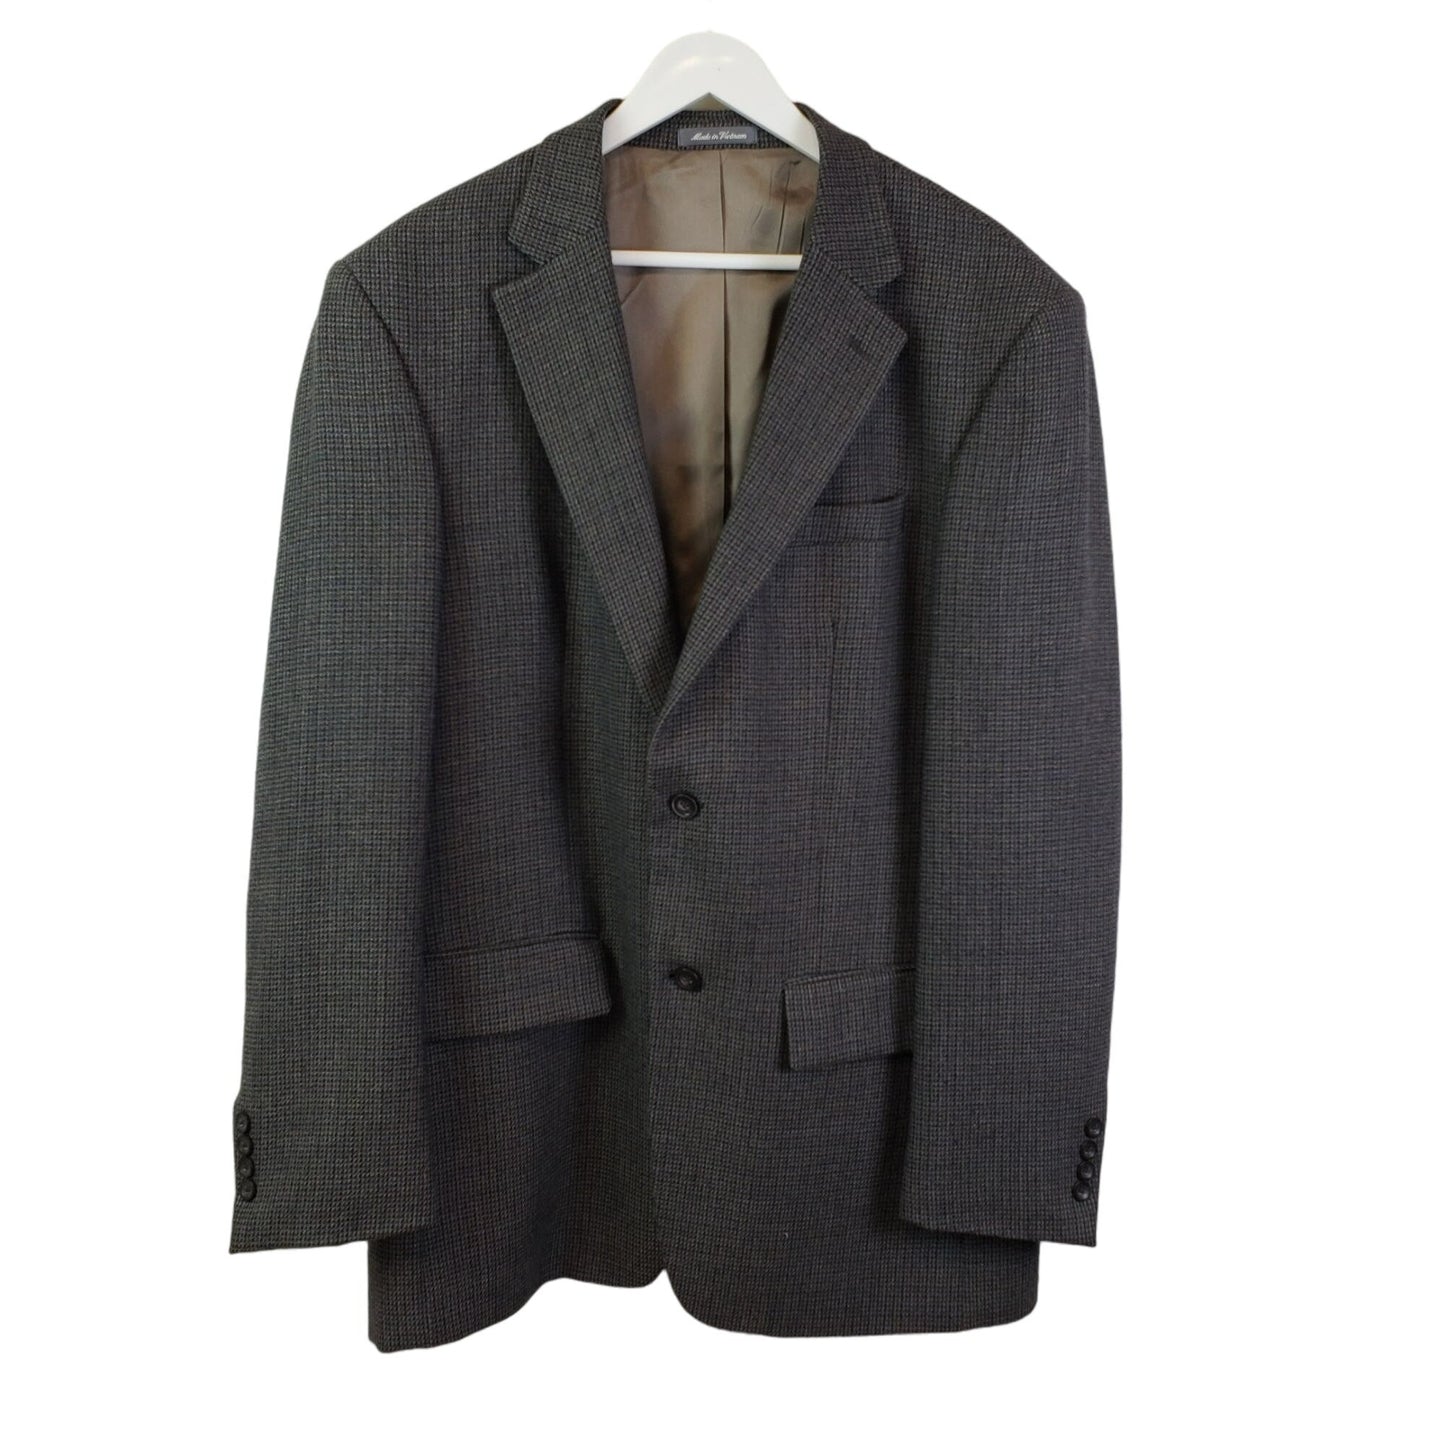 Oscar de la Renta Wool Suit Sport Jacket Size 44L